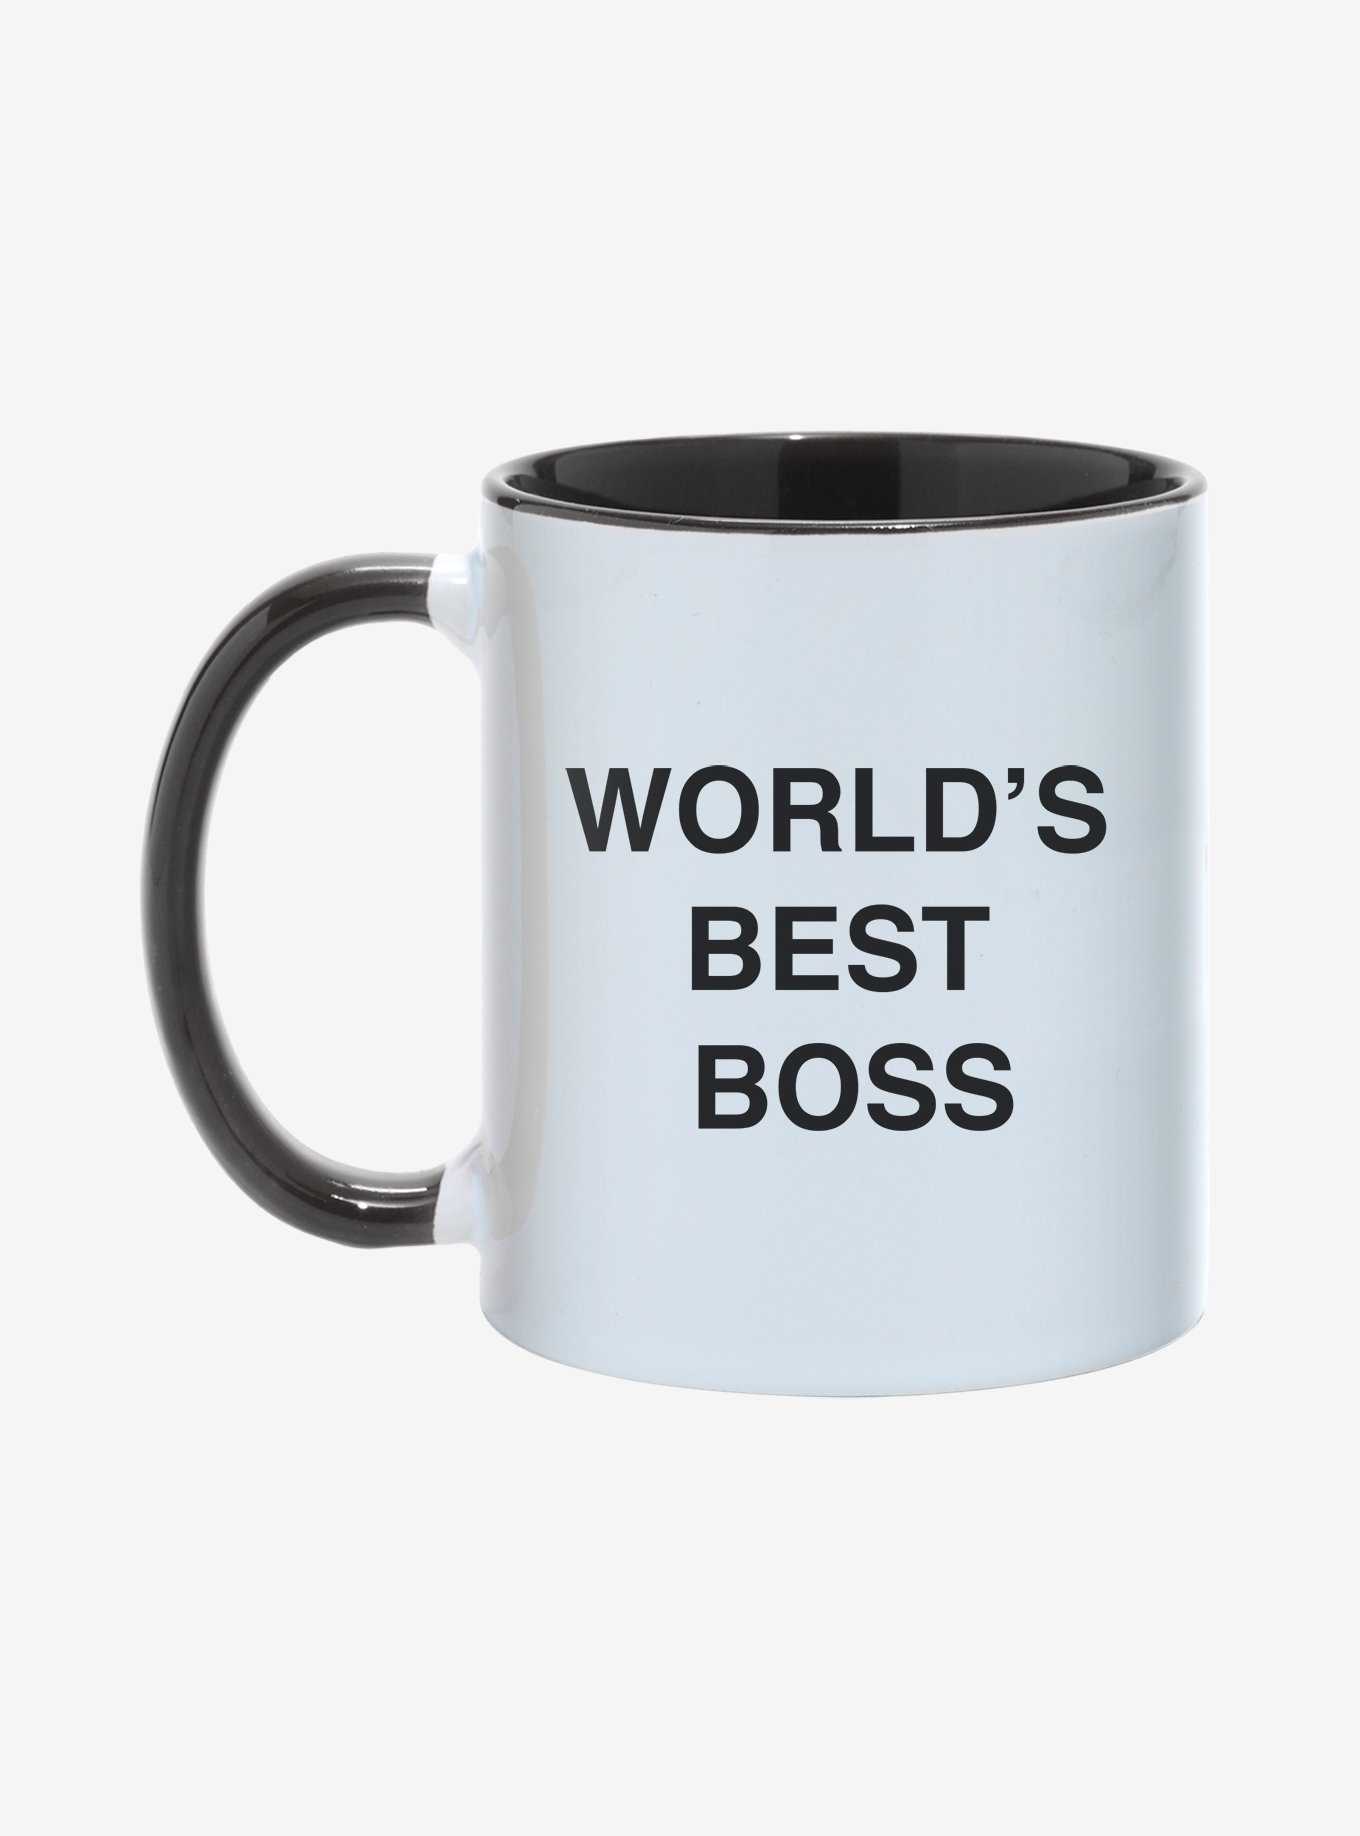 World's Best Boss mug